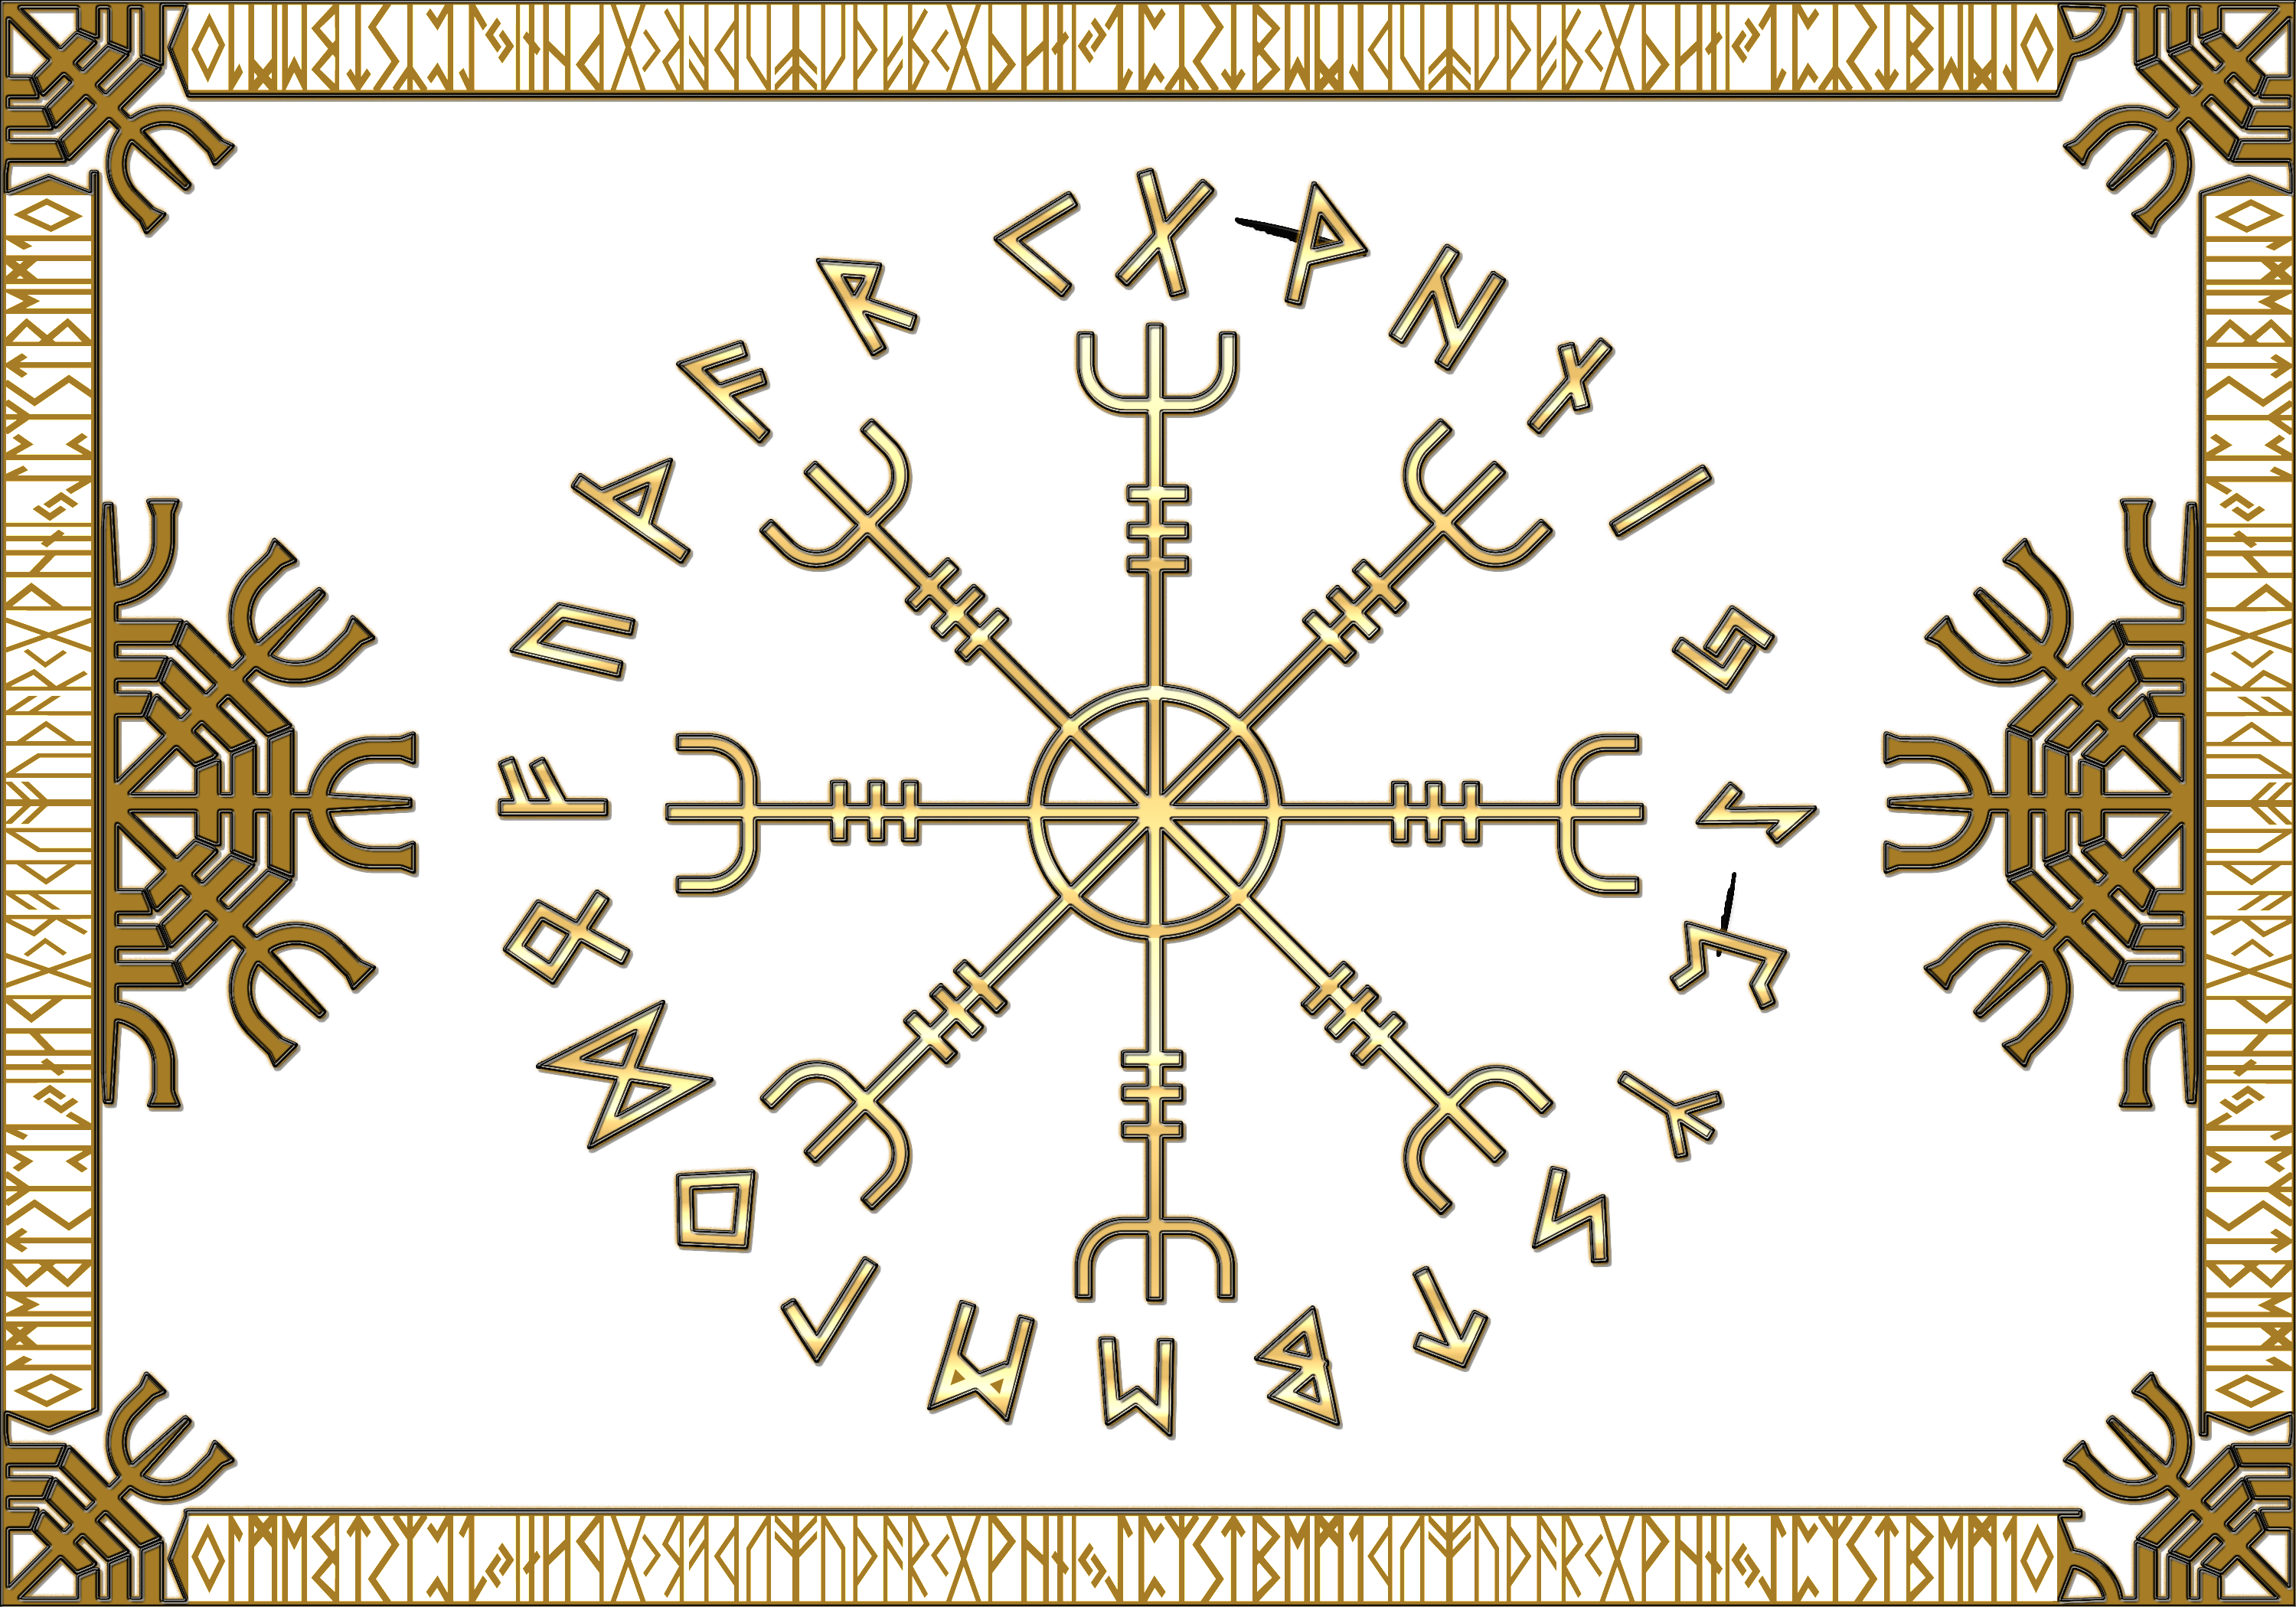 Ein goldener Rahmen mit dem gehimnissvollen Aegishjalmr im Runenkreis